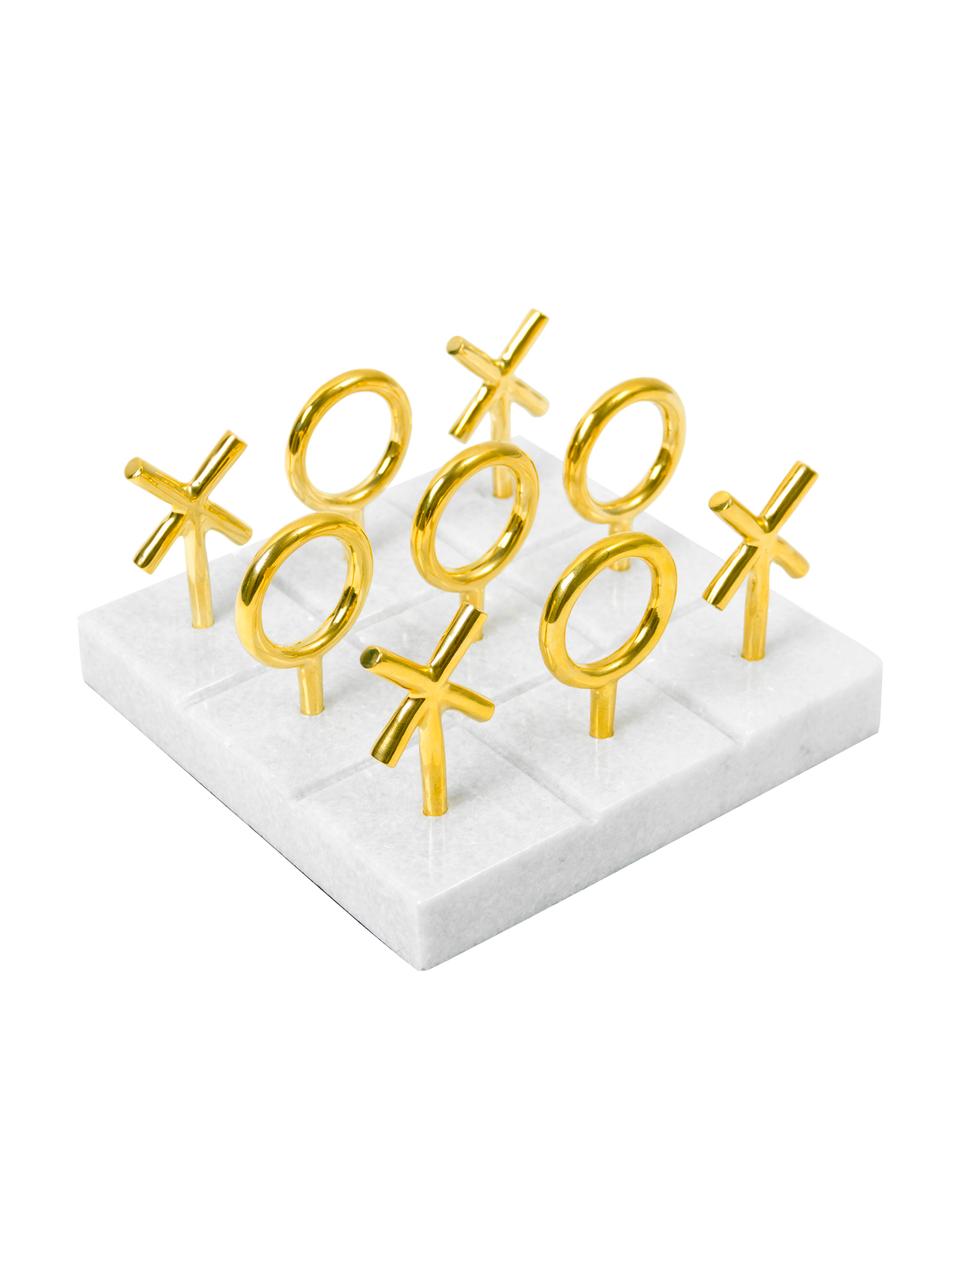 Mramorová desková hra Tic Tac Toe, Herní figurky: mosazná Podstava: bílá, Š 17 cm, V 10 cm